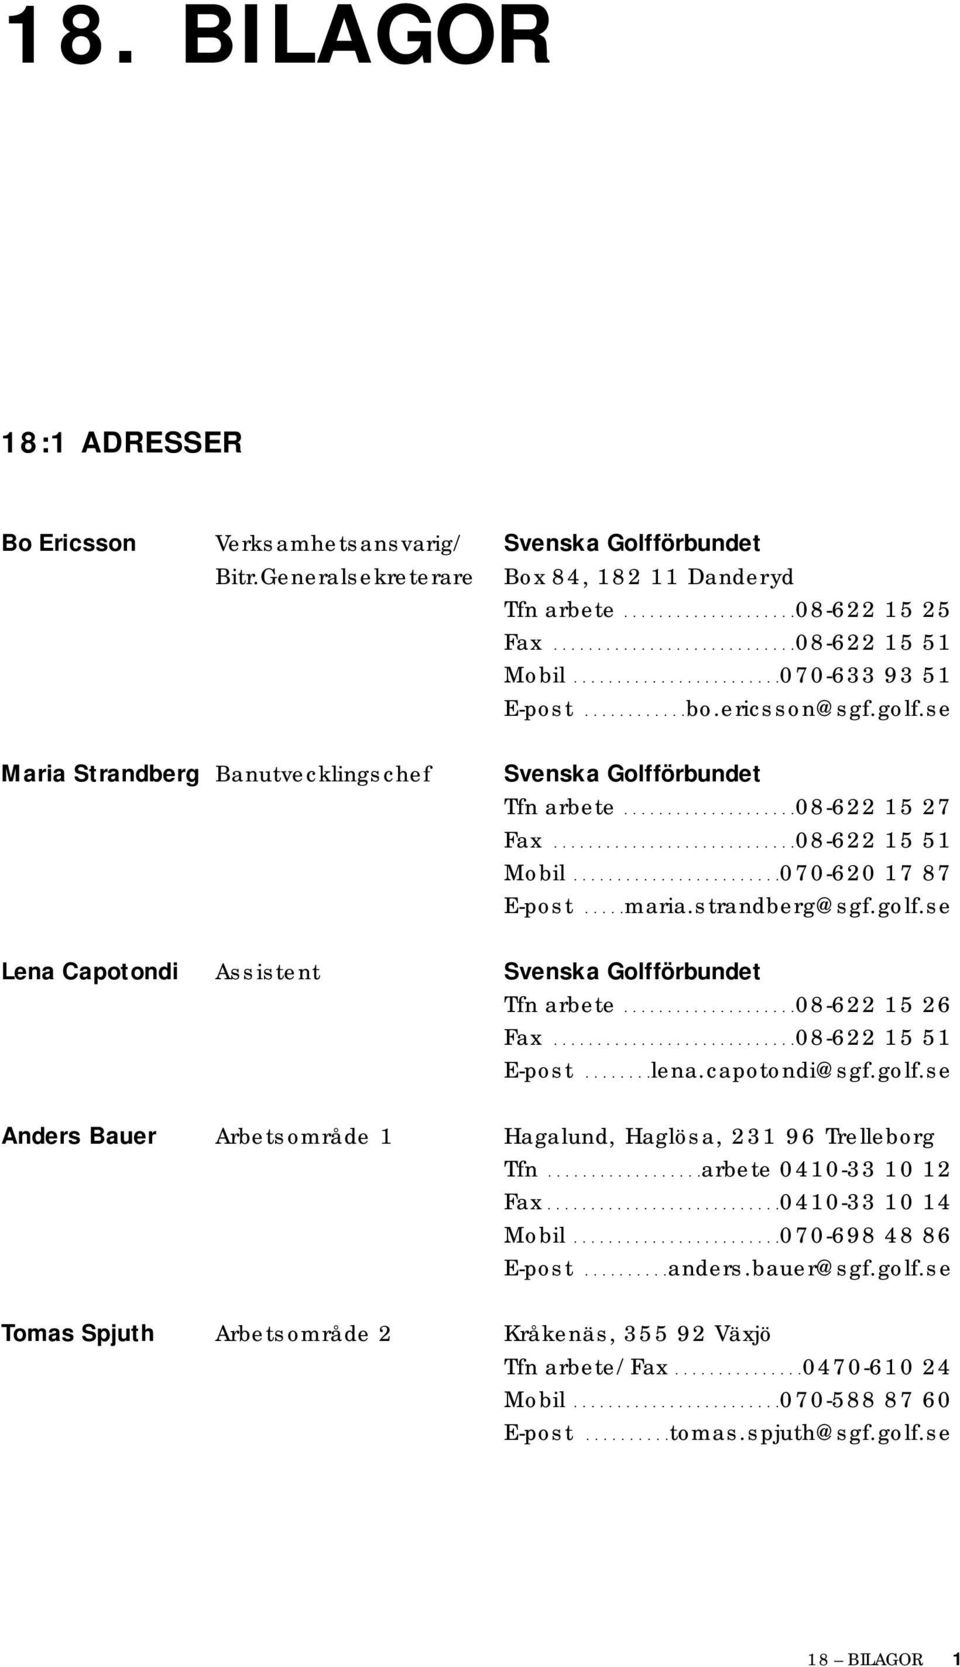 ...........................08-622 15 51 Mobil........................070-620 17 87 E-post.....maria.strandberg@sgf.golf.se Lena Capotondi Assistent Svenska Golfförbundet Tfn arbete....................08-622 15 26 Fax.